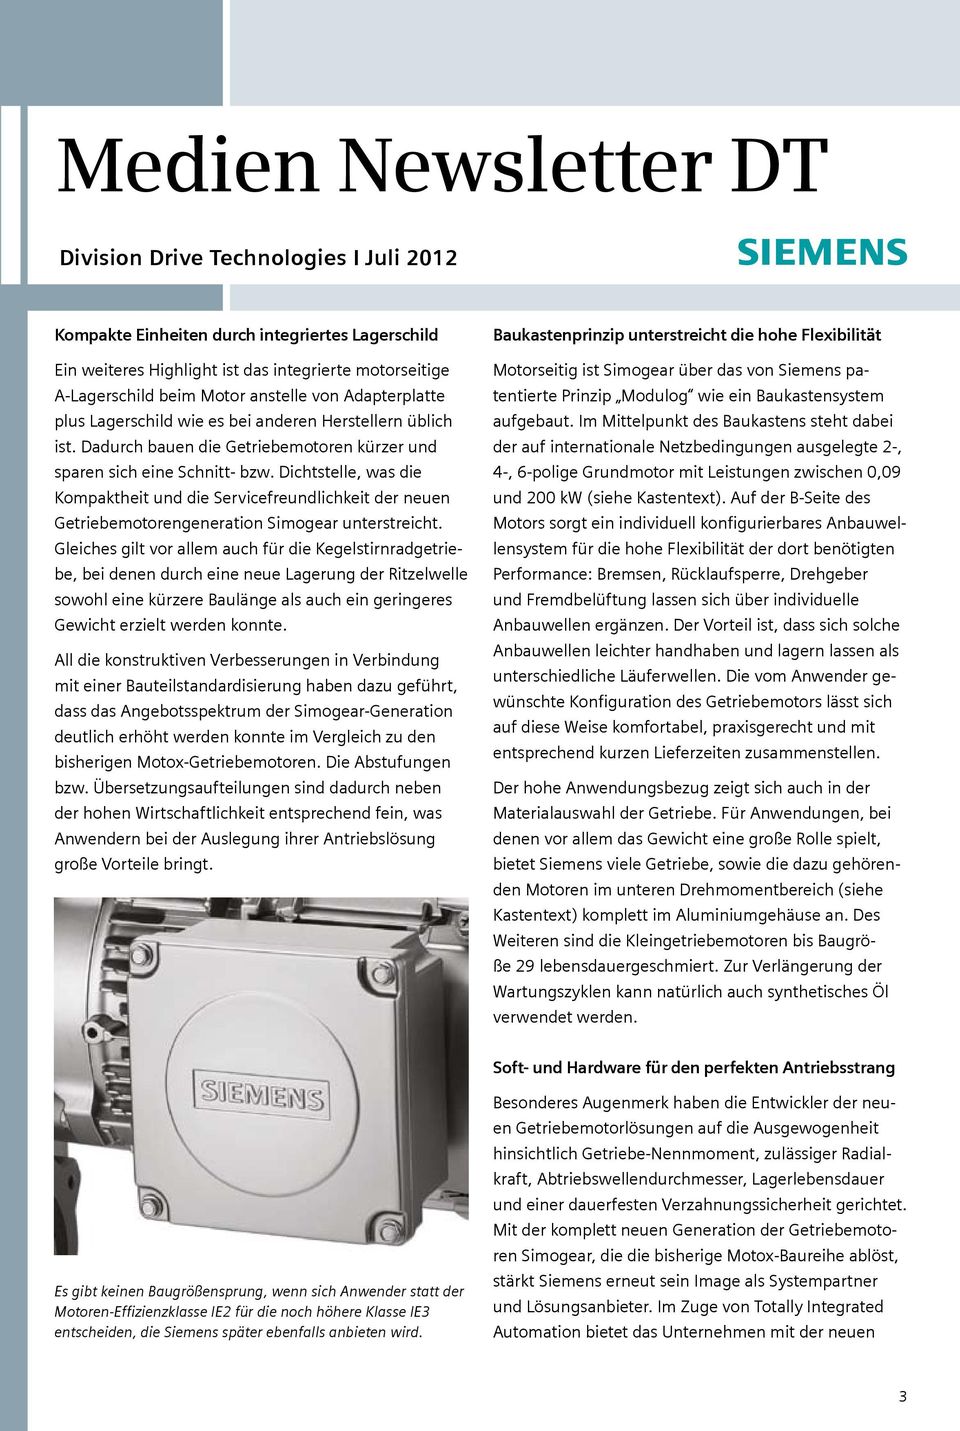 Dichtstelle, was die Kompaktheit und die Servicefreundlichkeit der neuen Getriebemotorengeneration Simogear unterstreicht.